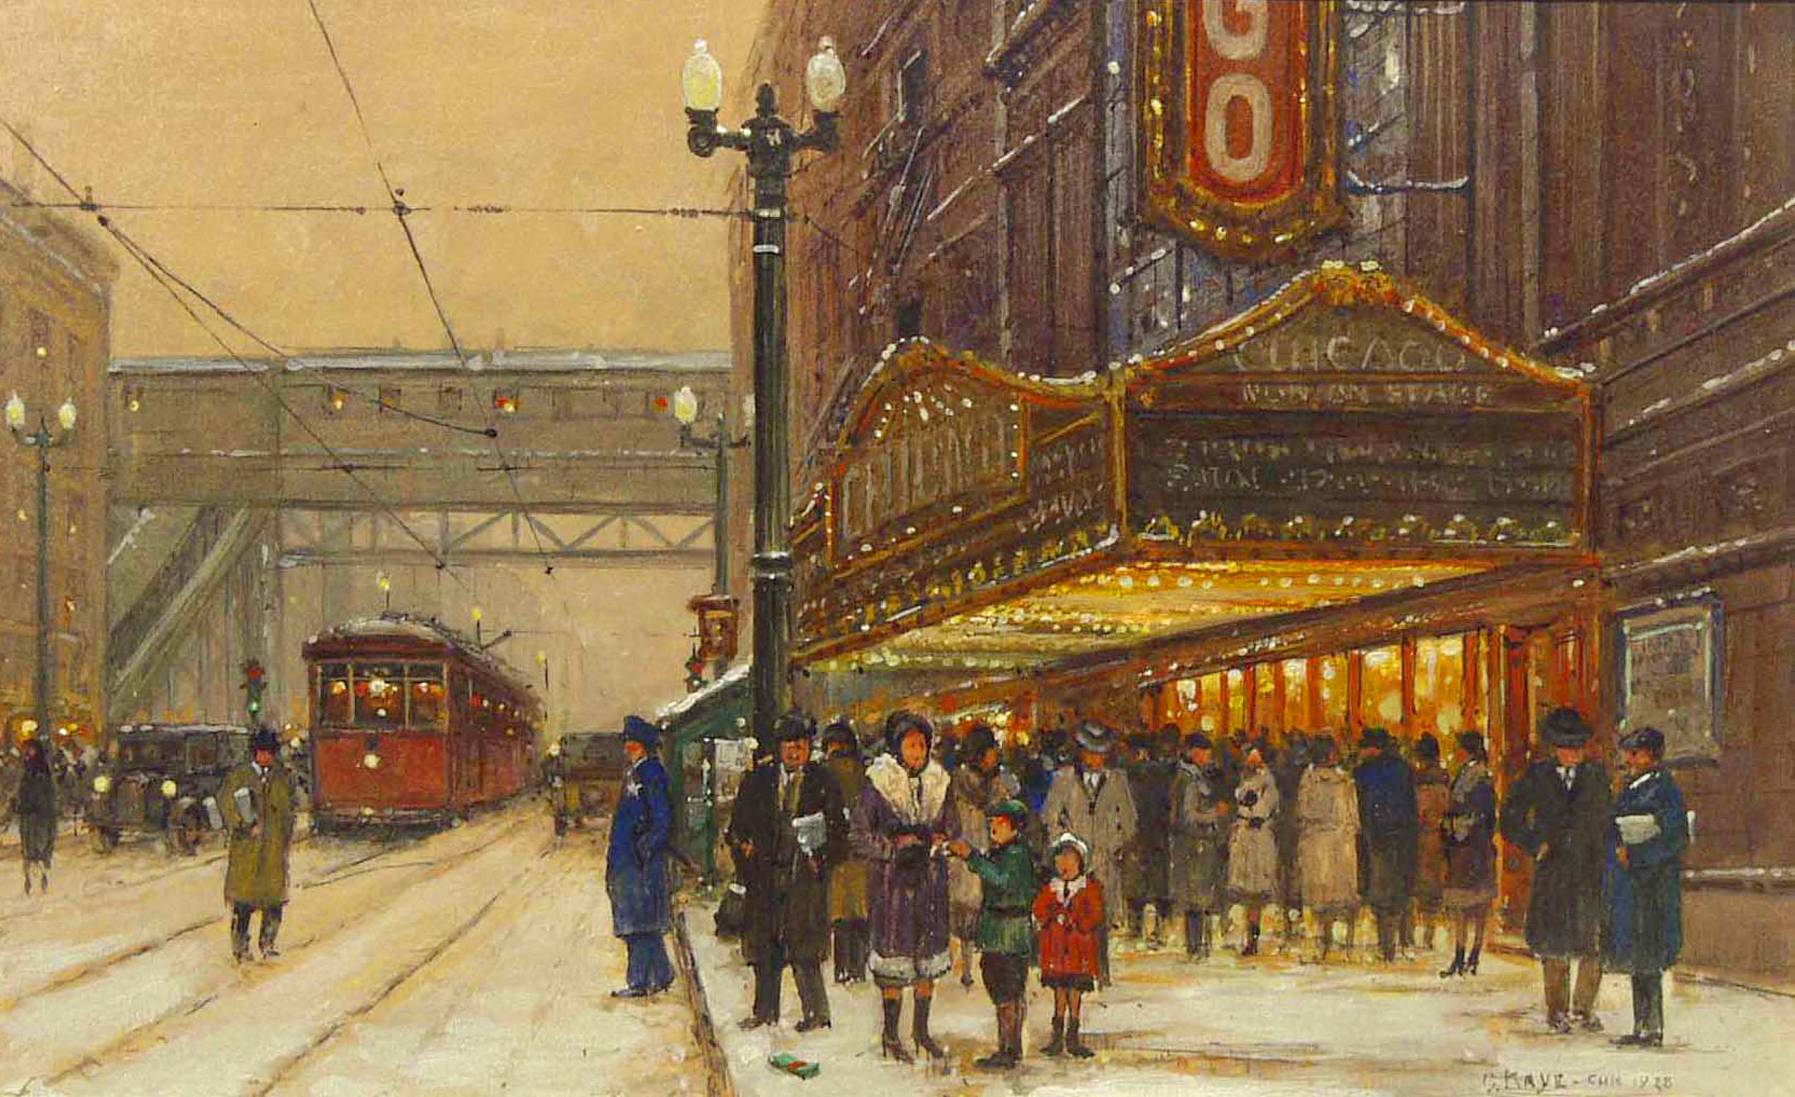 painting-chicago-chicago-theater-scene-in-winter-artist-otis-kaye-1928.jpg